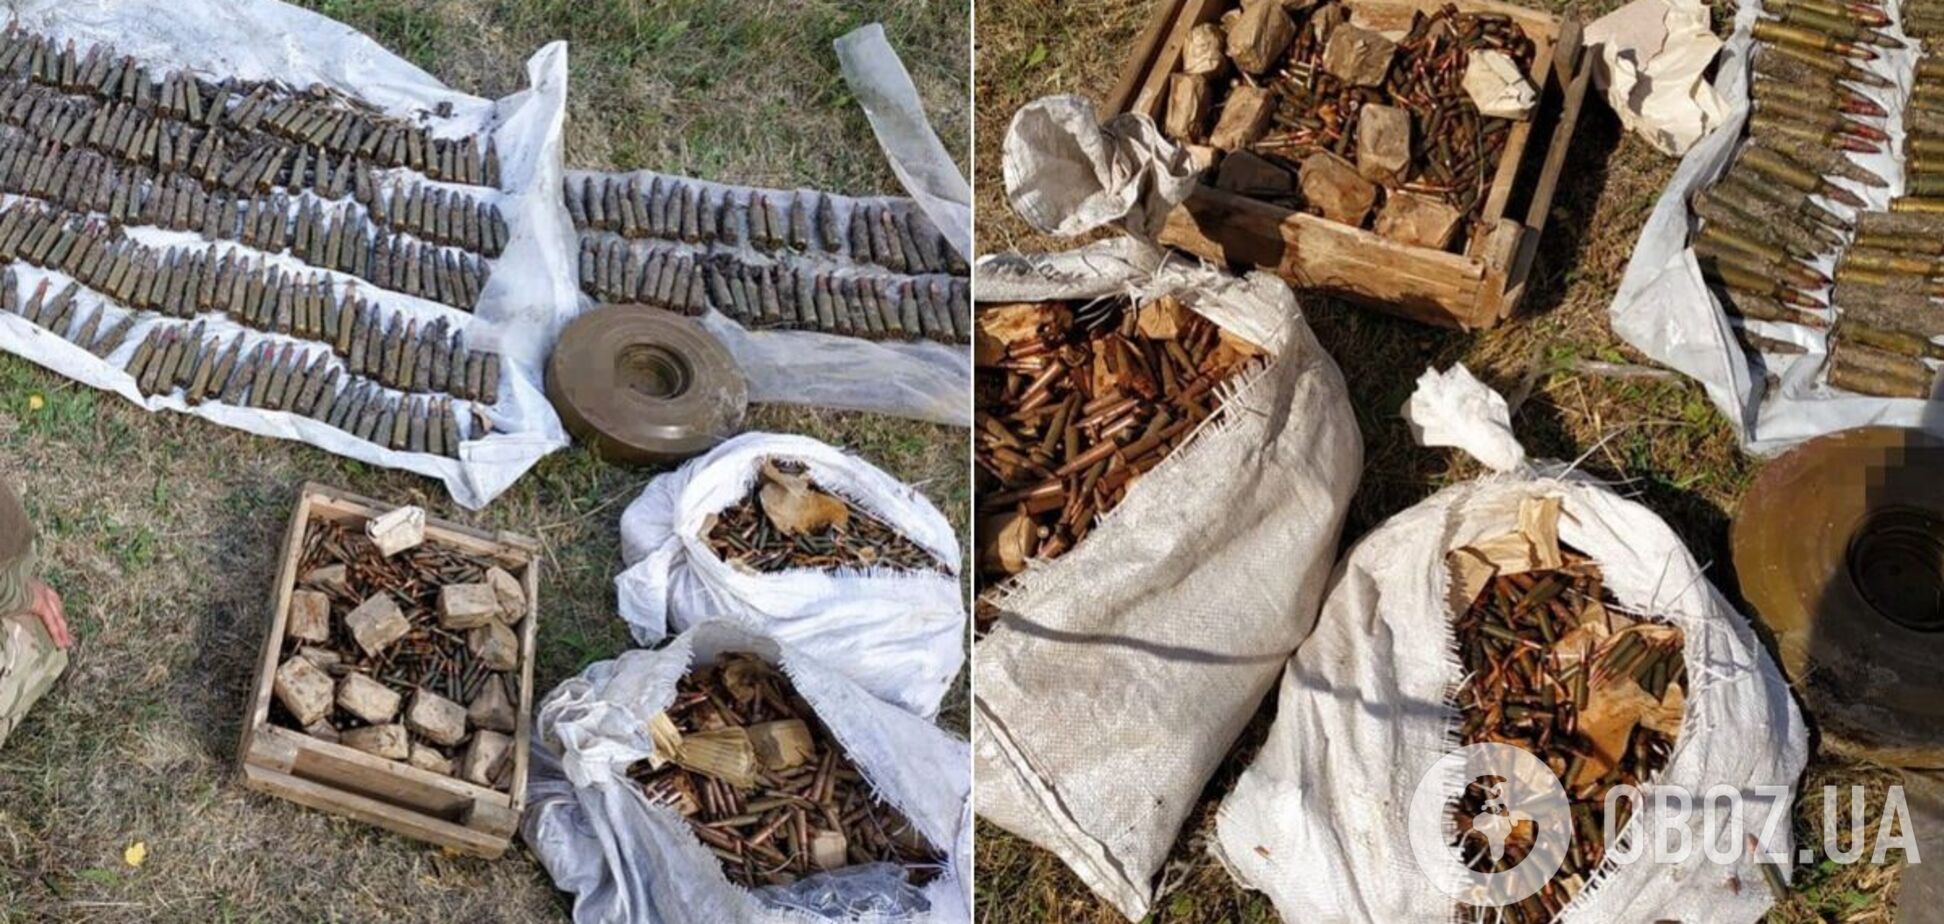 СБУ нашла огромный арсенал оружия в тайнике на Луганщине